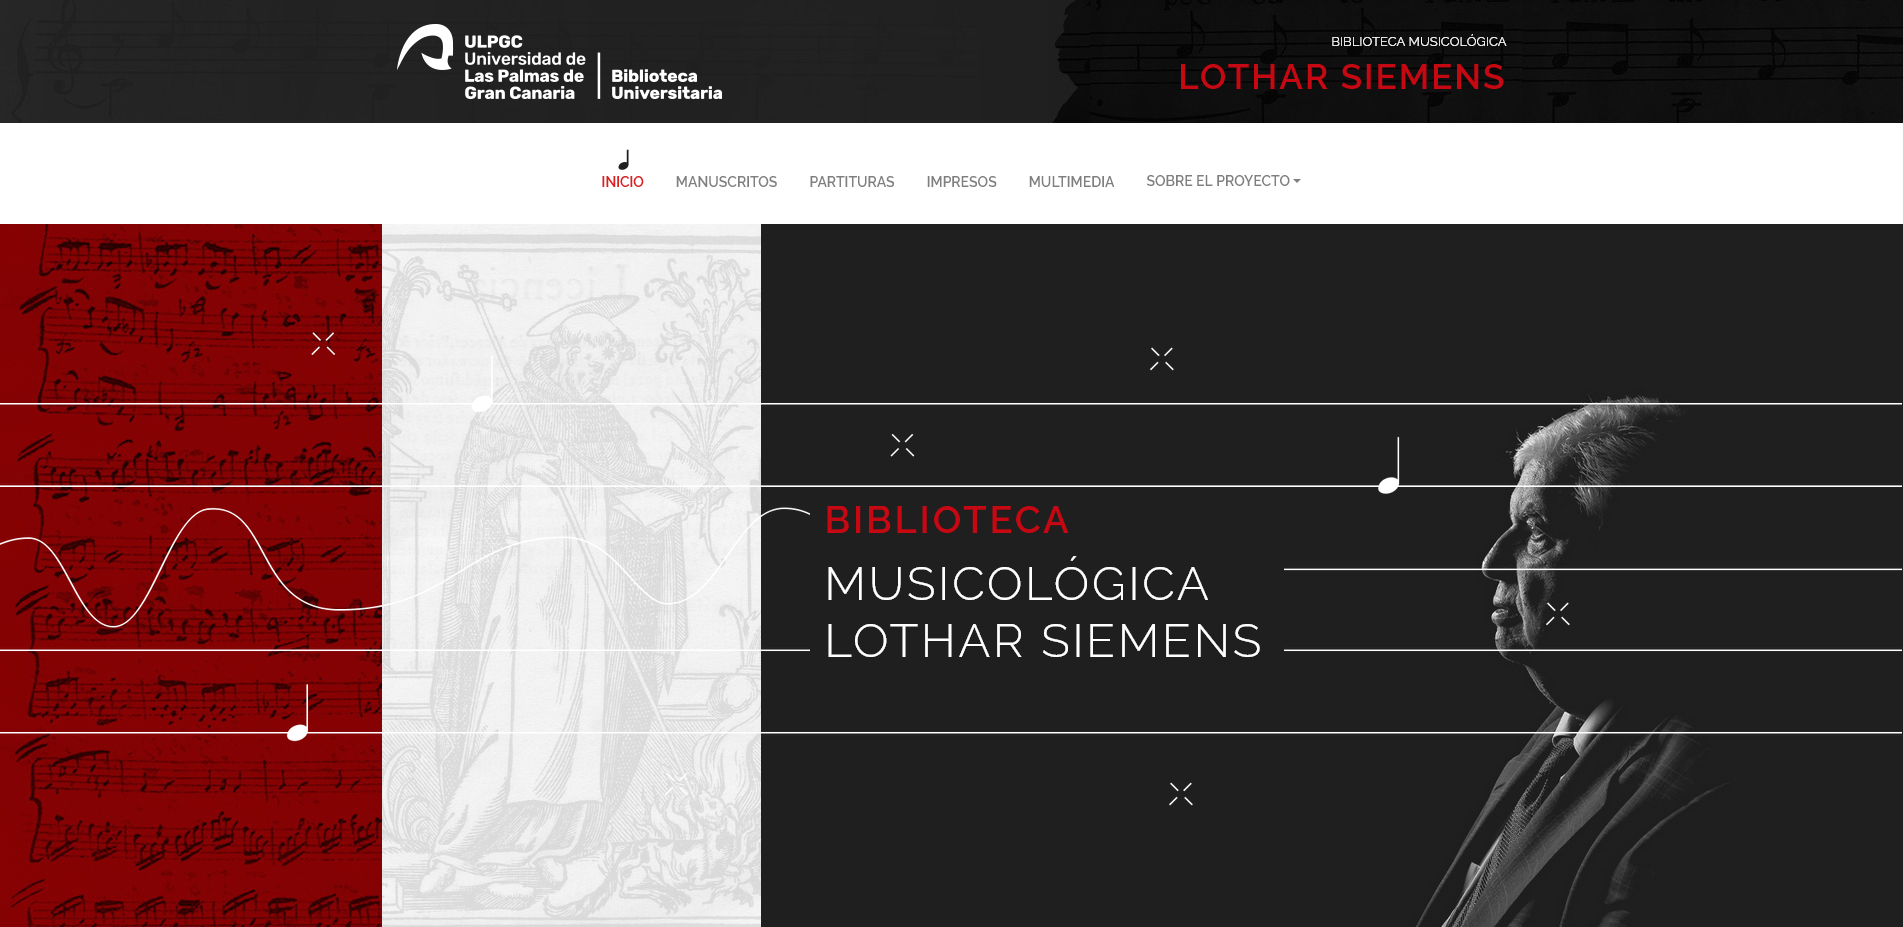 Portada del portal de la Biblioteca musicológica Lothar Siemens